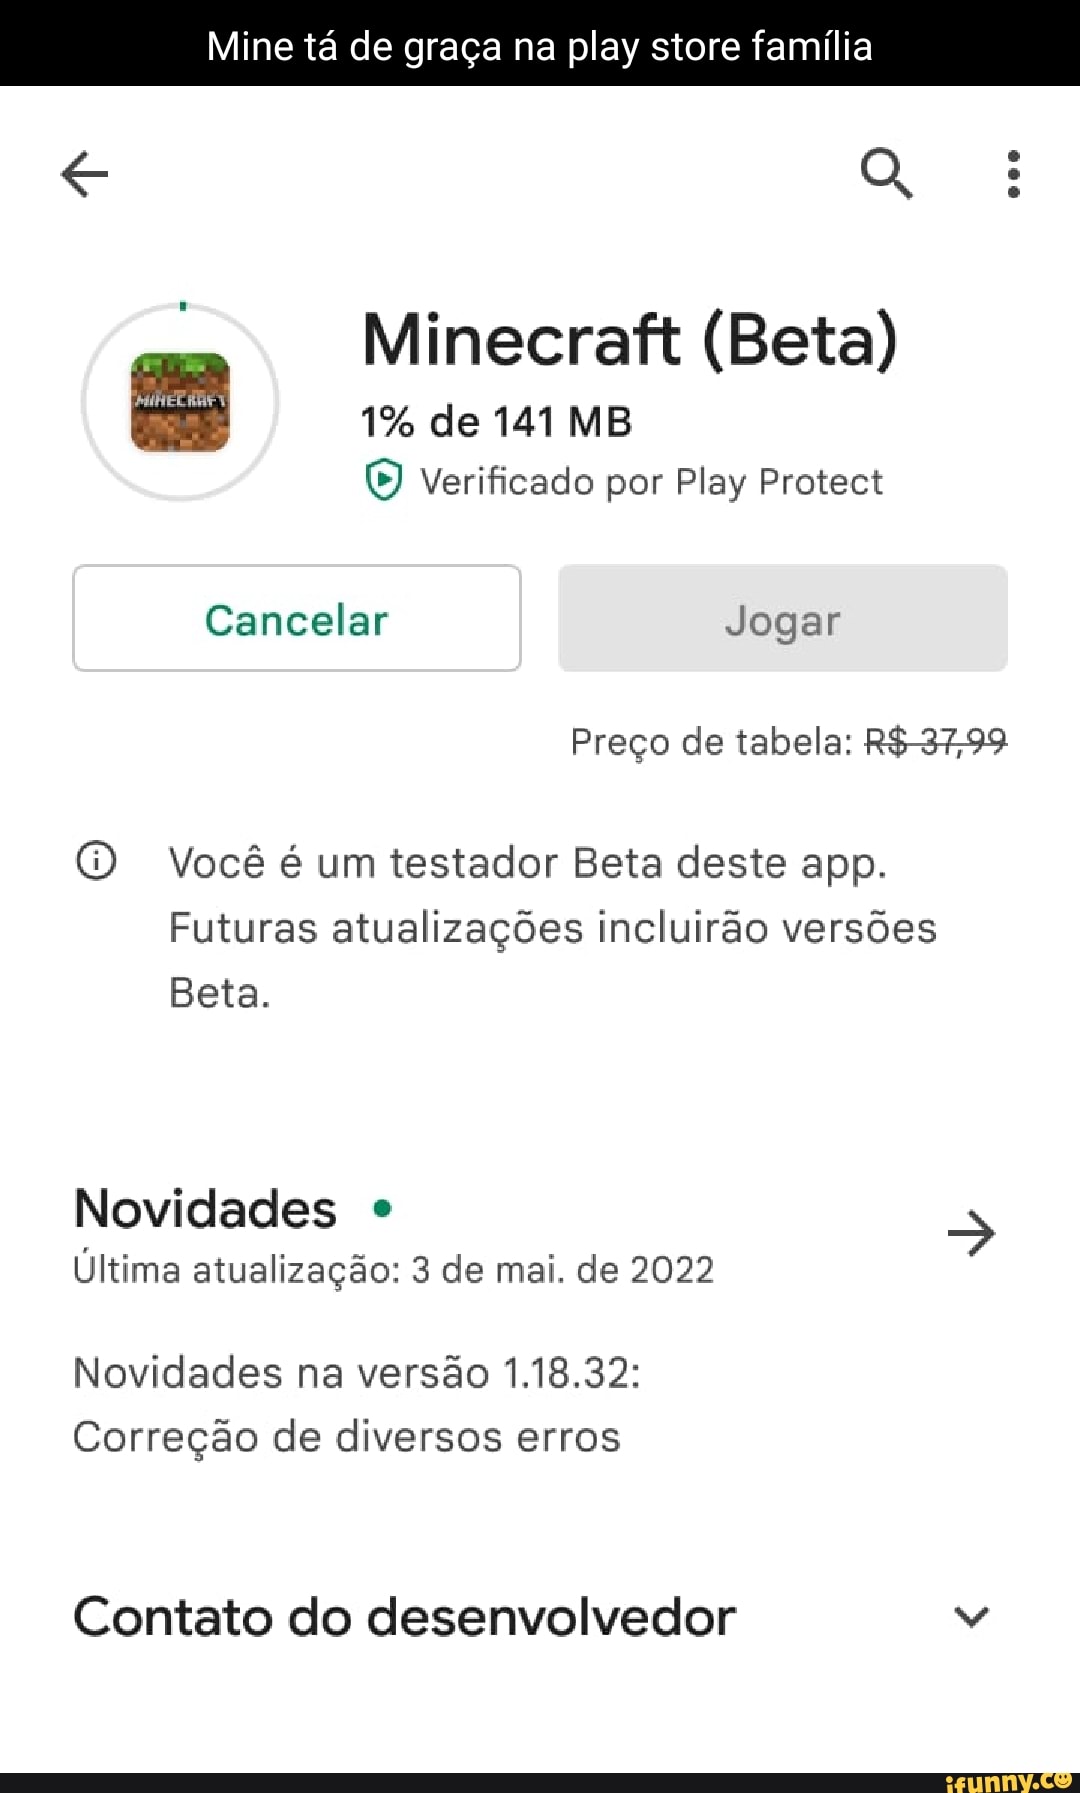 MINECRAFT TÁ DE GRAÇA NA PLAY STORE AEEE Minecraft (Beta) Mojand Compras  Instalar reço de tabela: m testador Beta deste app. Futuras atualizações  incluirão Eeta termna em dias - iFunny Brazil